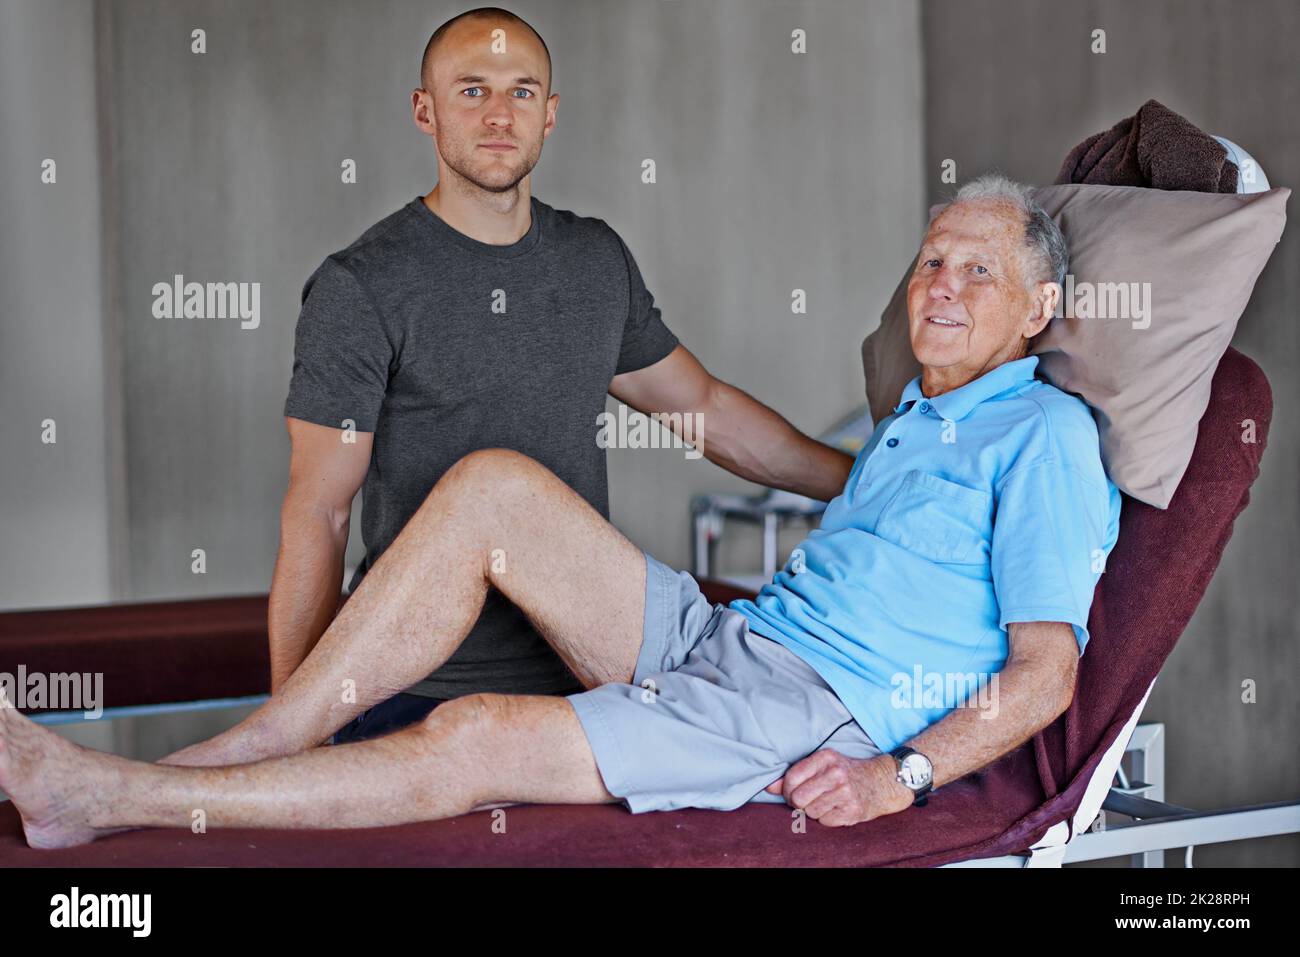 Physio nimmt zwei. Porträt eines älteren Mannes, der eine Physiotherapie mit einem männlichen Therapeuten gemacht hat. Stockfoto